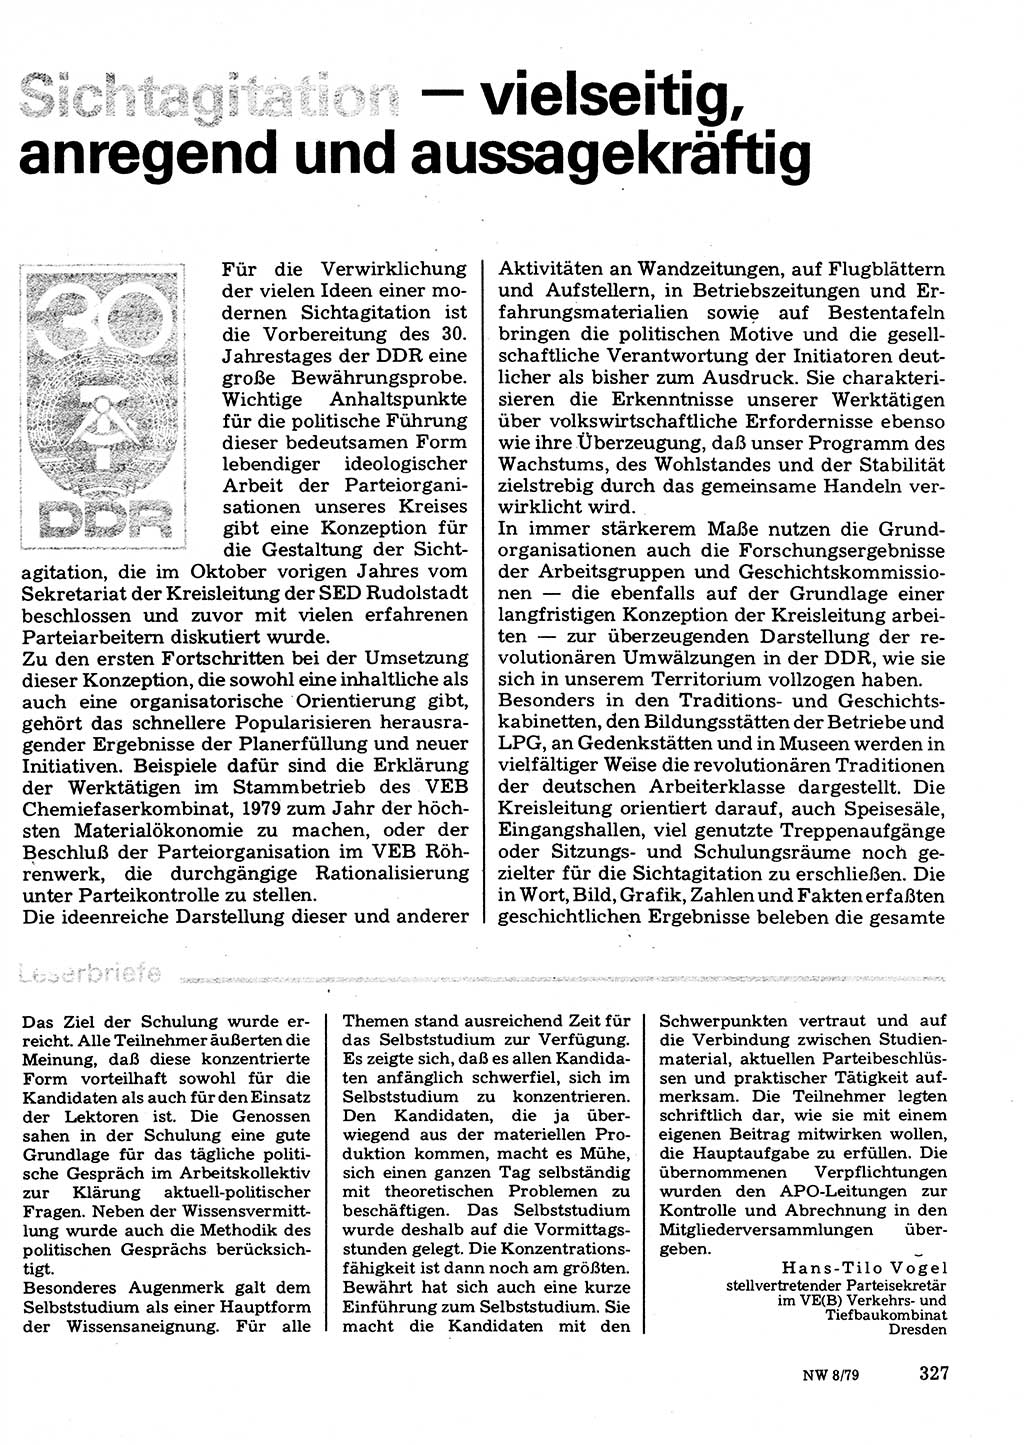 Neuer Weg (NW), Organ des Zentralkomitees (ZK) der SED (Sozialistische Einheitspartei Deutschlands) für Fragen des Parteilebens, 34. Jahrgang [Deutsche Demokratische Republik (DDR)] 1979, Seite 327 (NW ZK SED DDR 1979, S. 327)